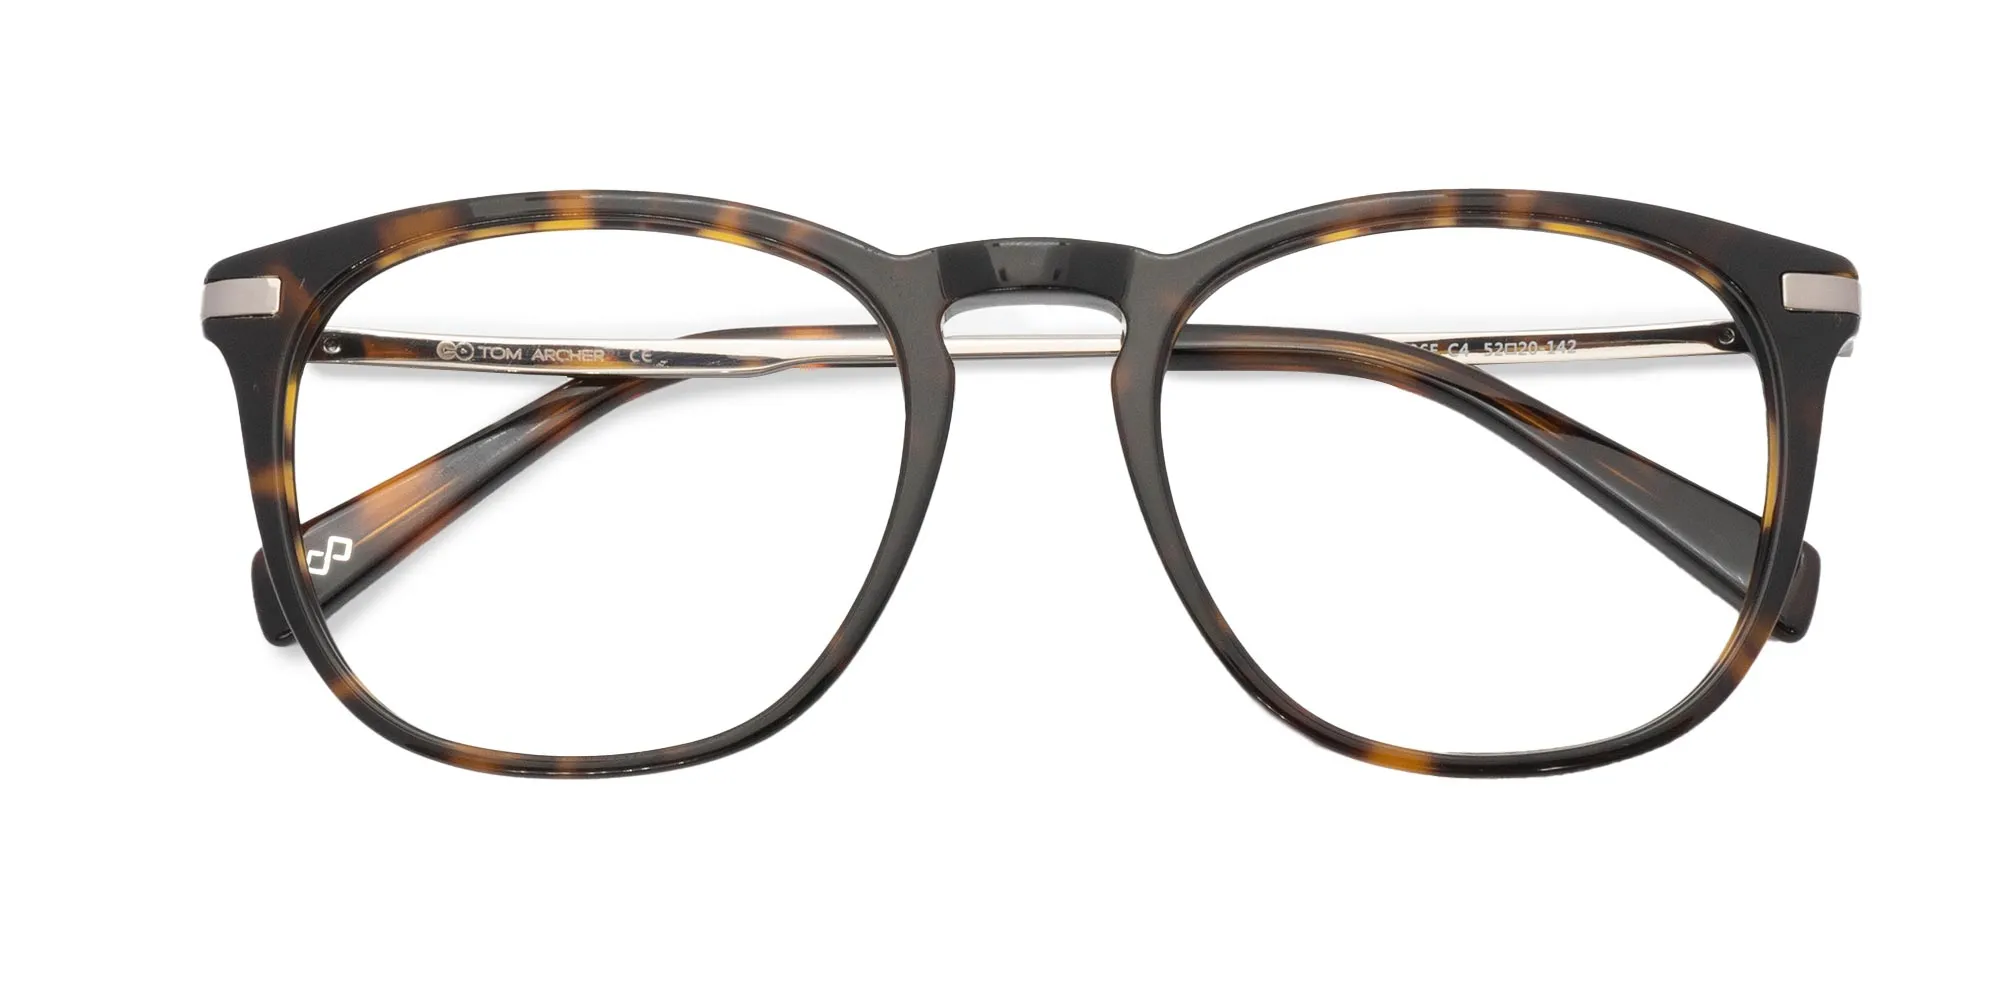 Havana & Tortoise Frame Glasses For Men & Women-2